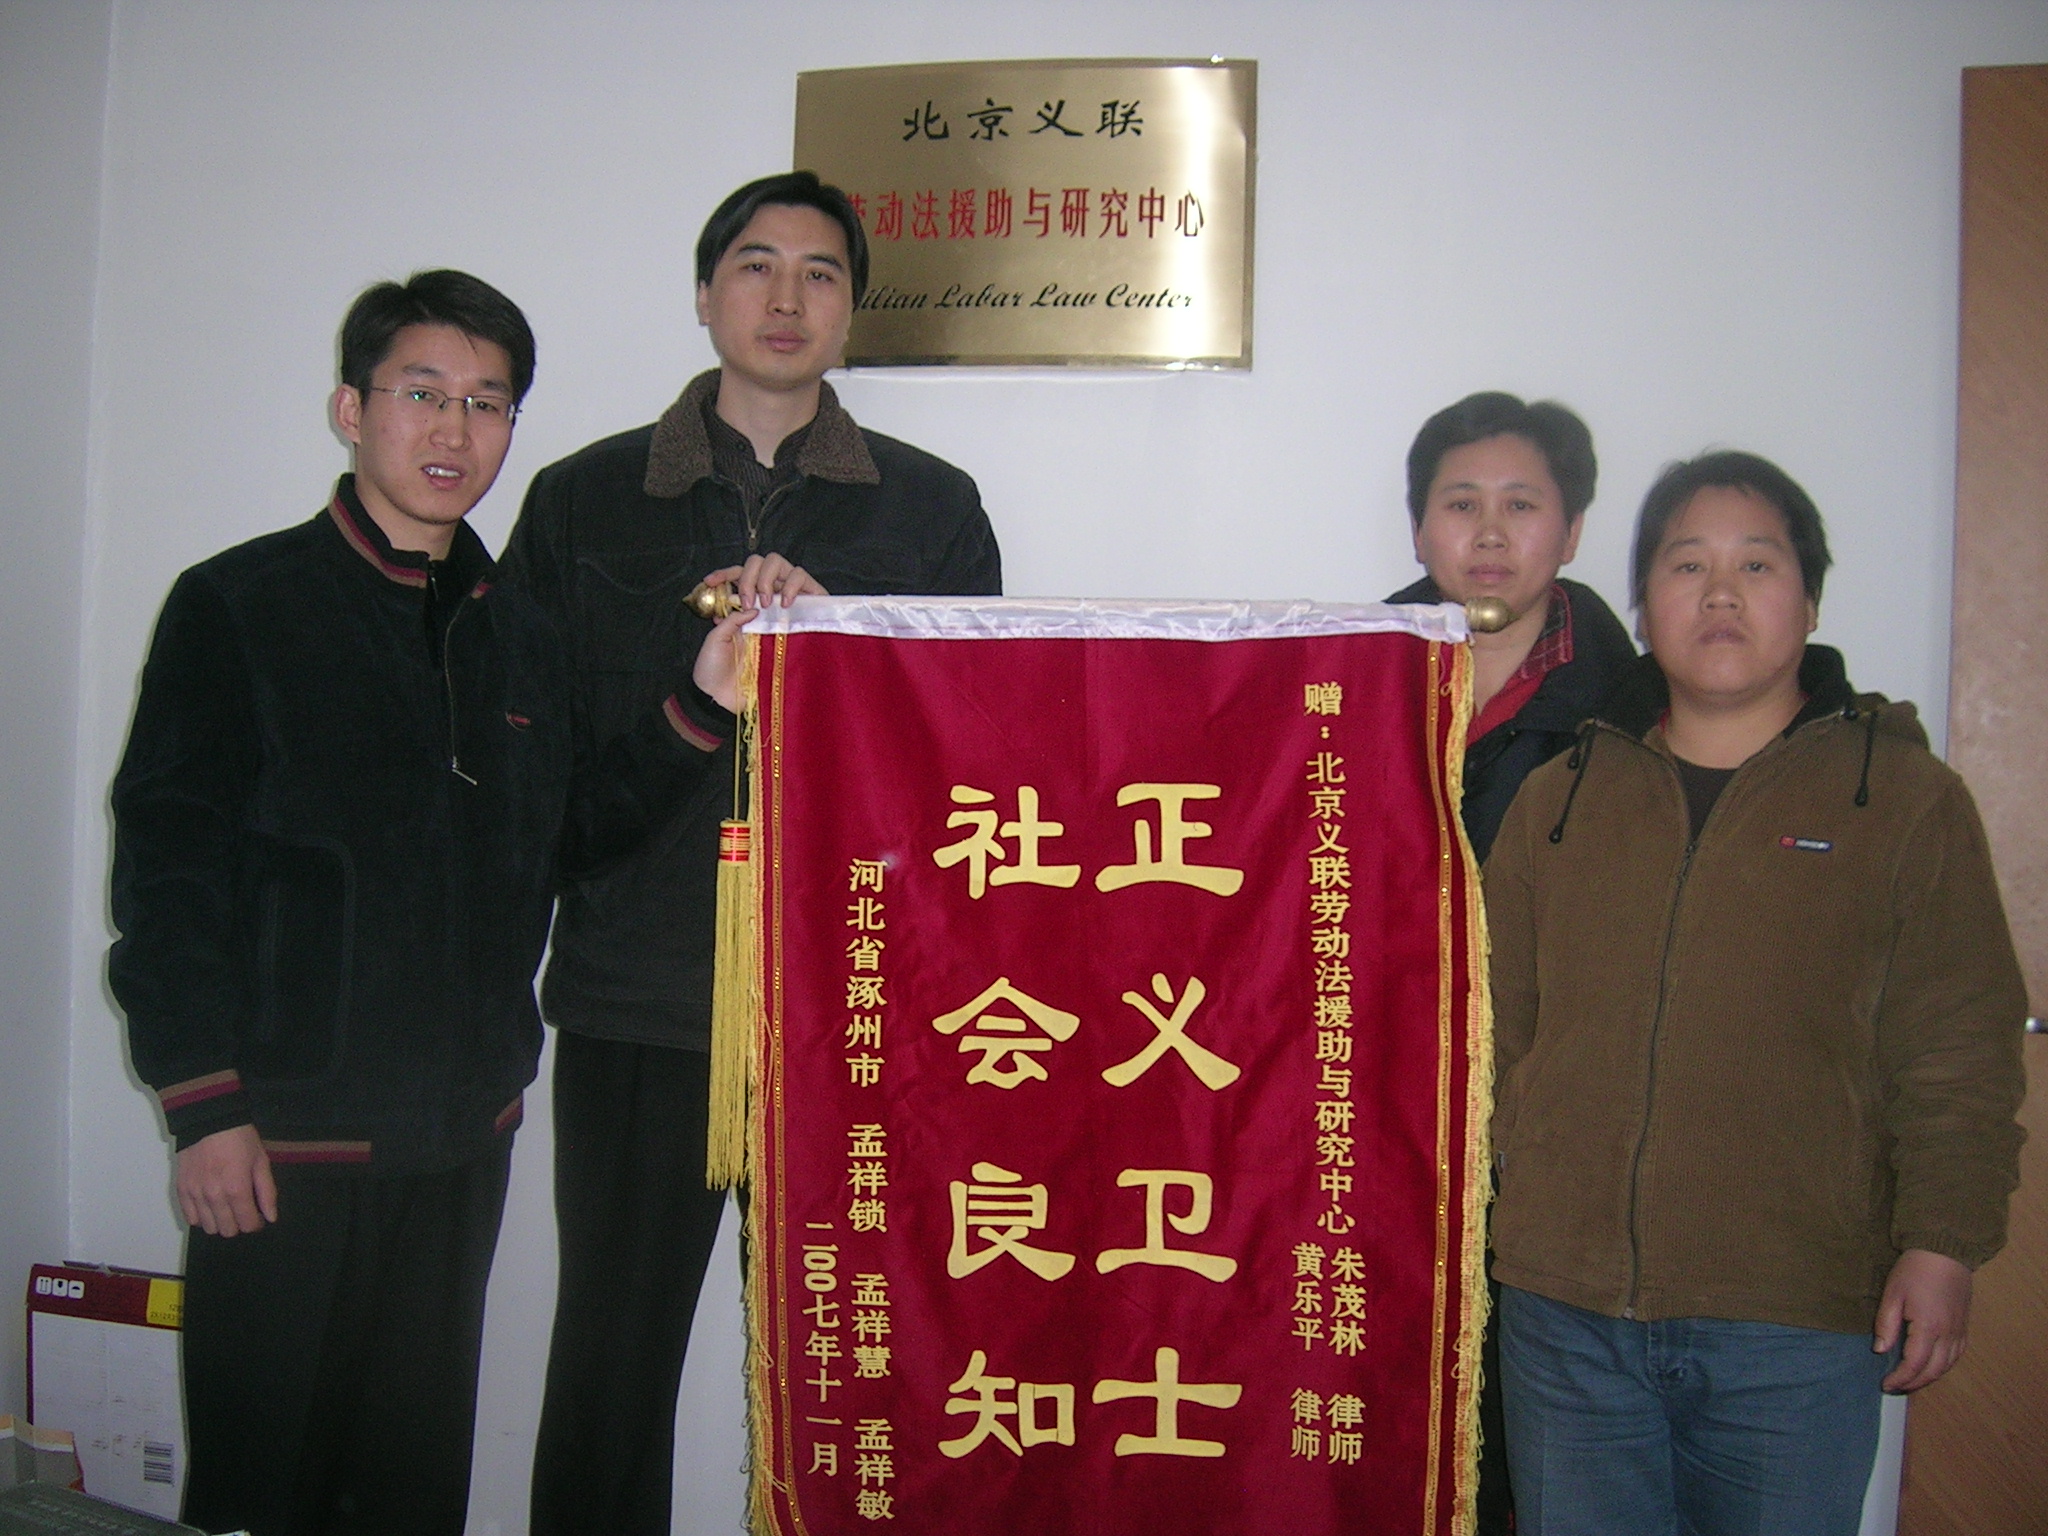 黃樂平(北京義聯勞動法援助與研究中心主任)